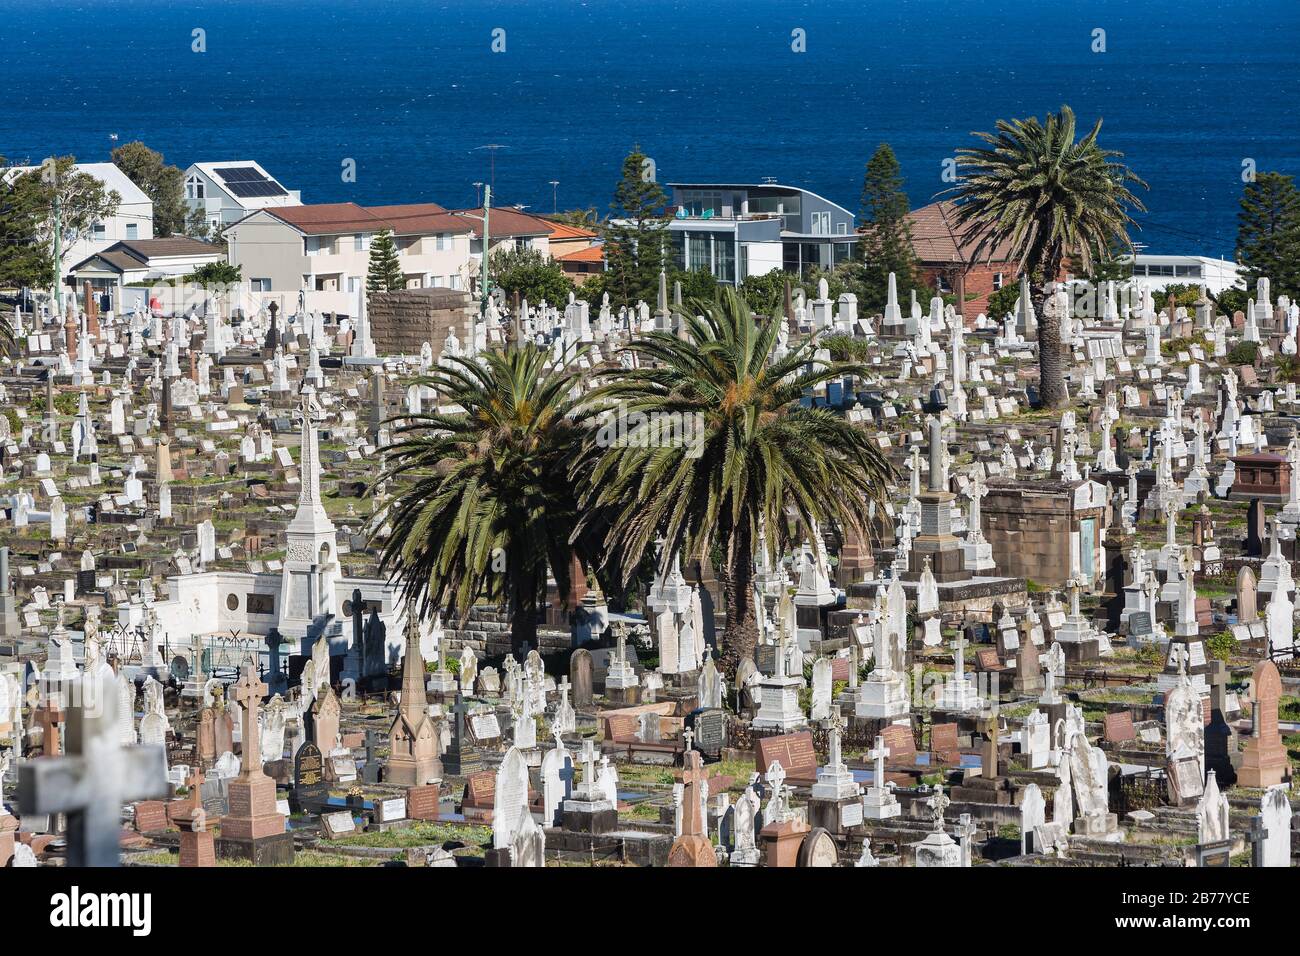 El Cementerio Waverley es un cementerio catalogado como patrimonio histórico en la cima de los acantilados de Bronte, en los suburbios del este de Sydney, Nueva Zelanda, Australia. El paseo por la costa wa Foto de stock